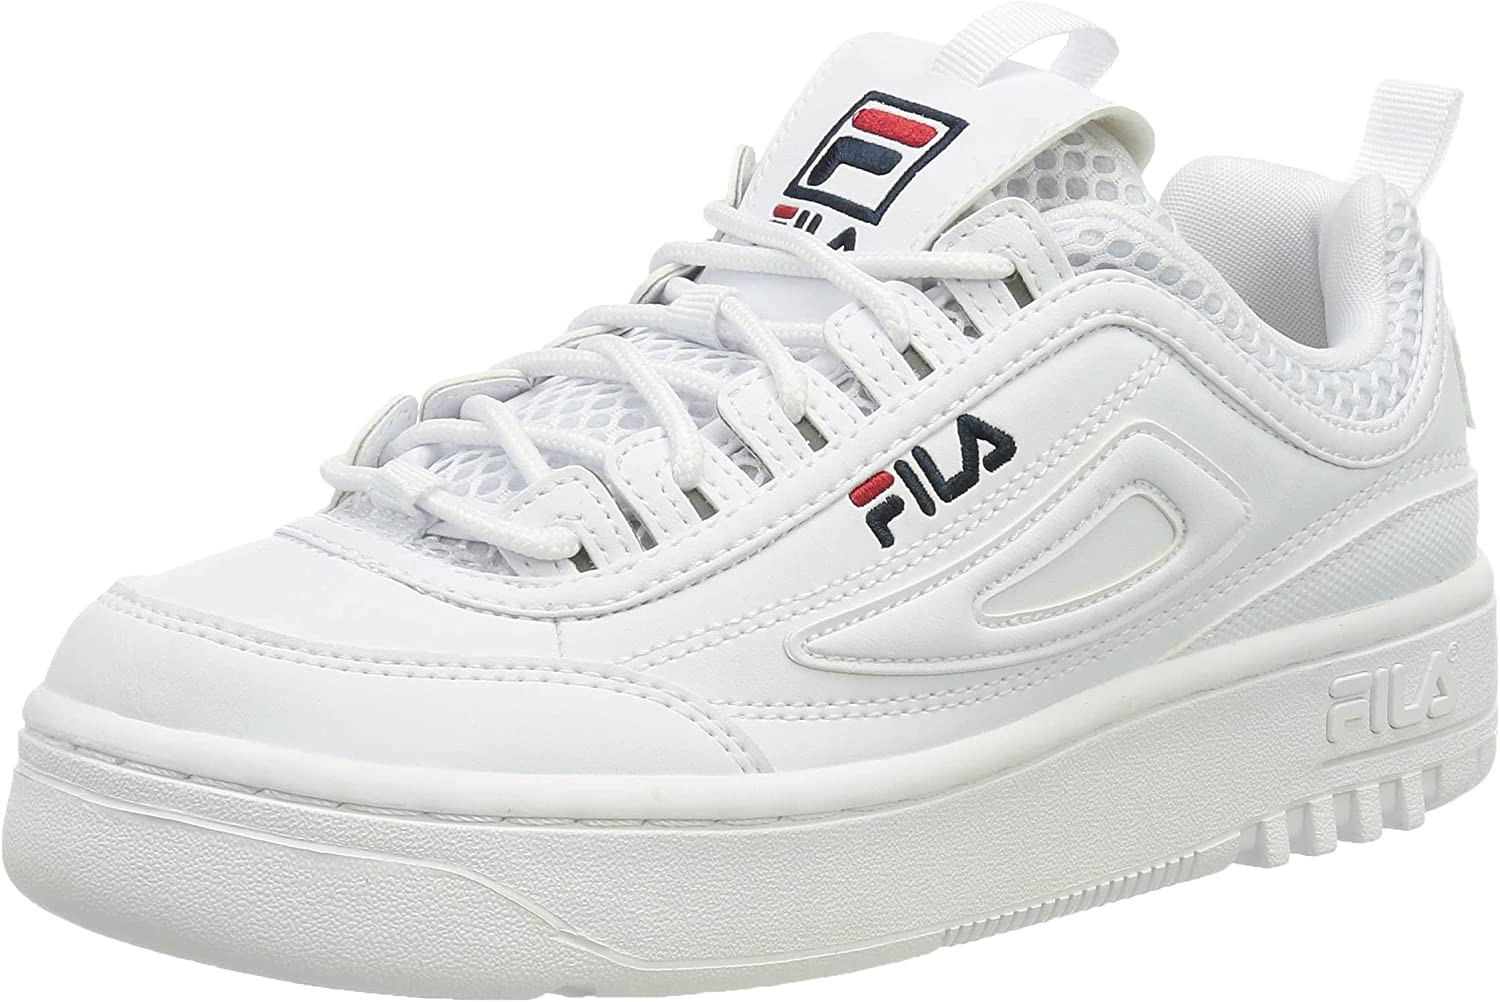 Fila FX Disruptor - Zapatillas mujer, color blanco, 40 EU